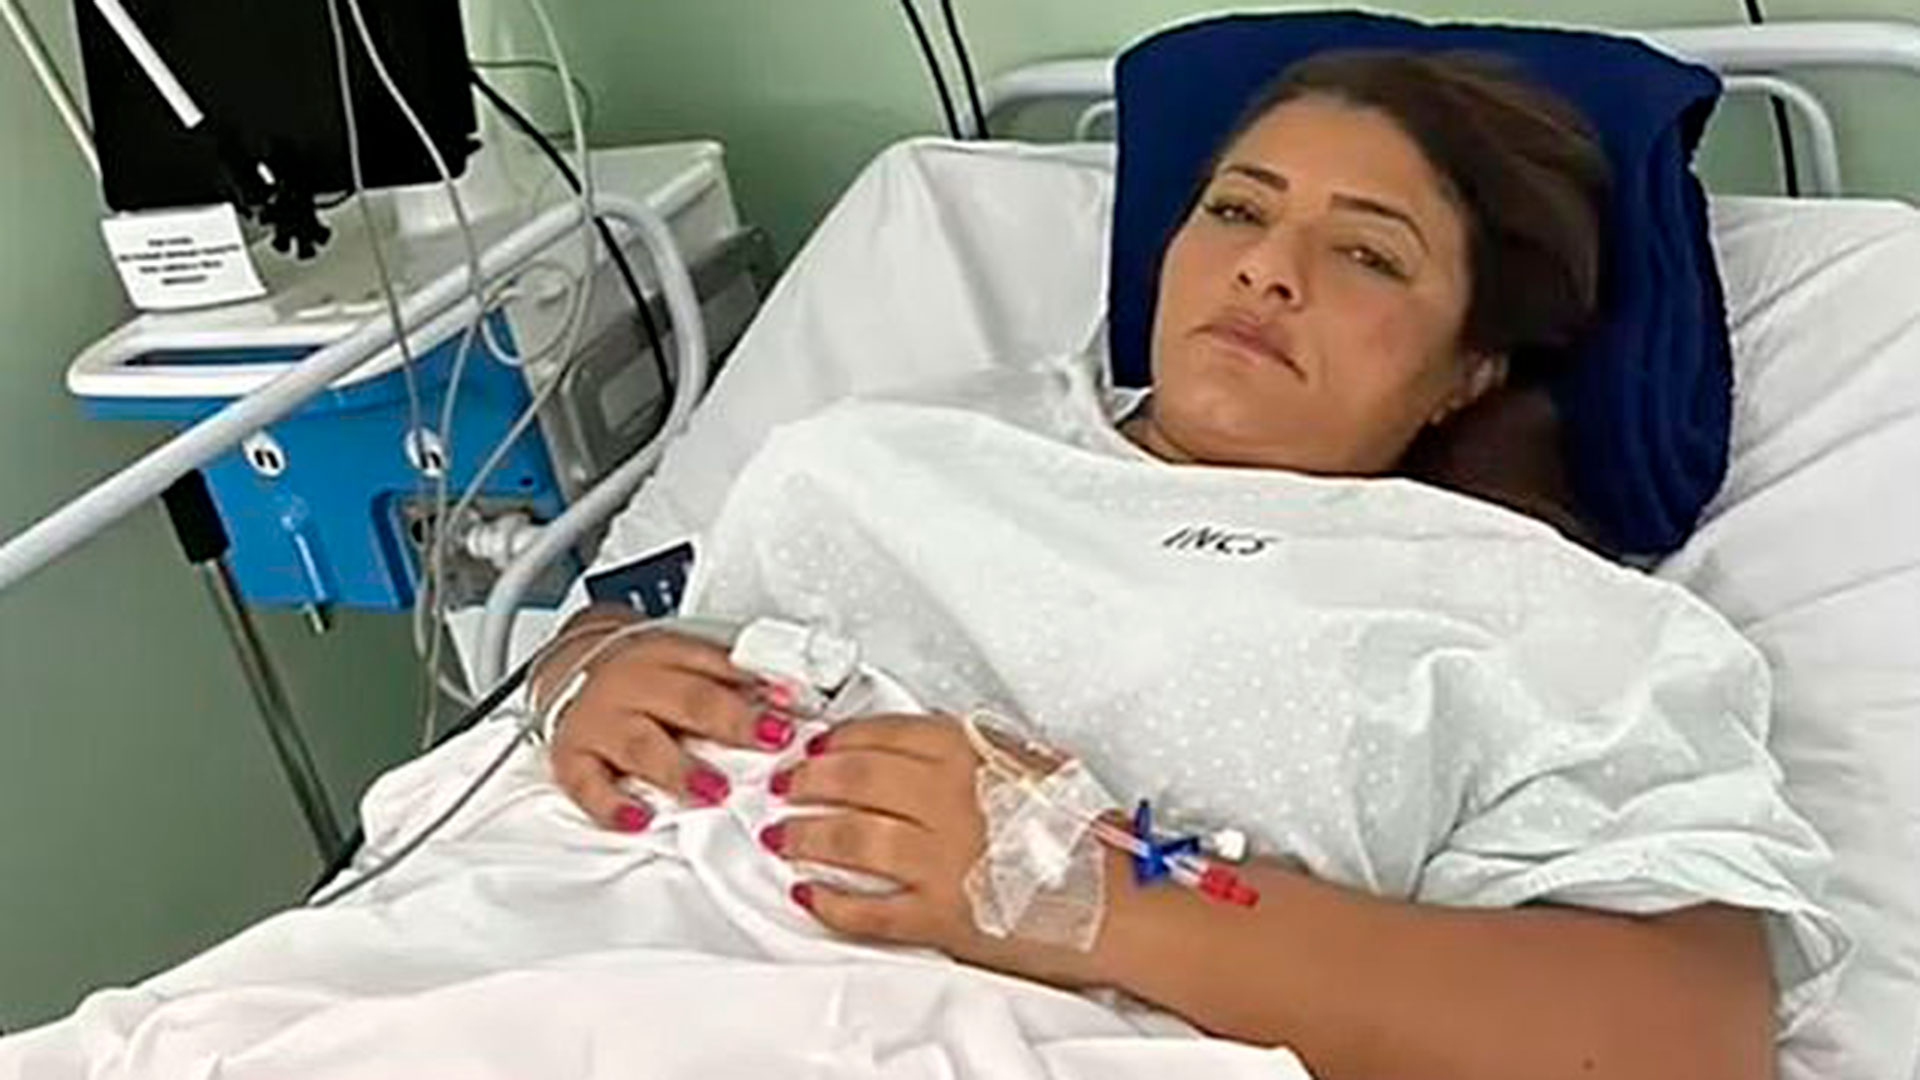 La candidata a diputada brasileña Ely Santos fue hospitalizada tras el derrumbe